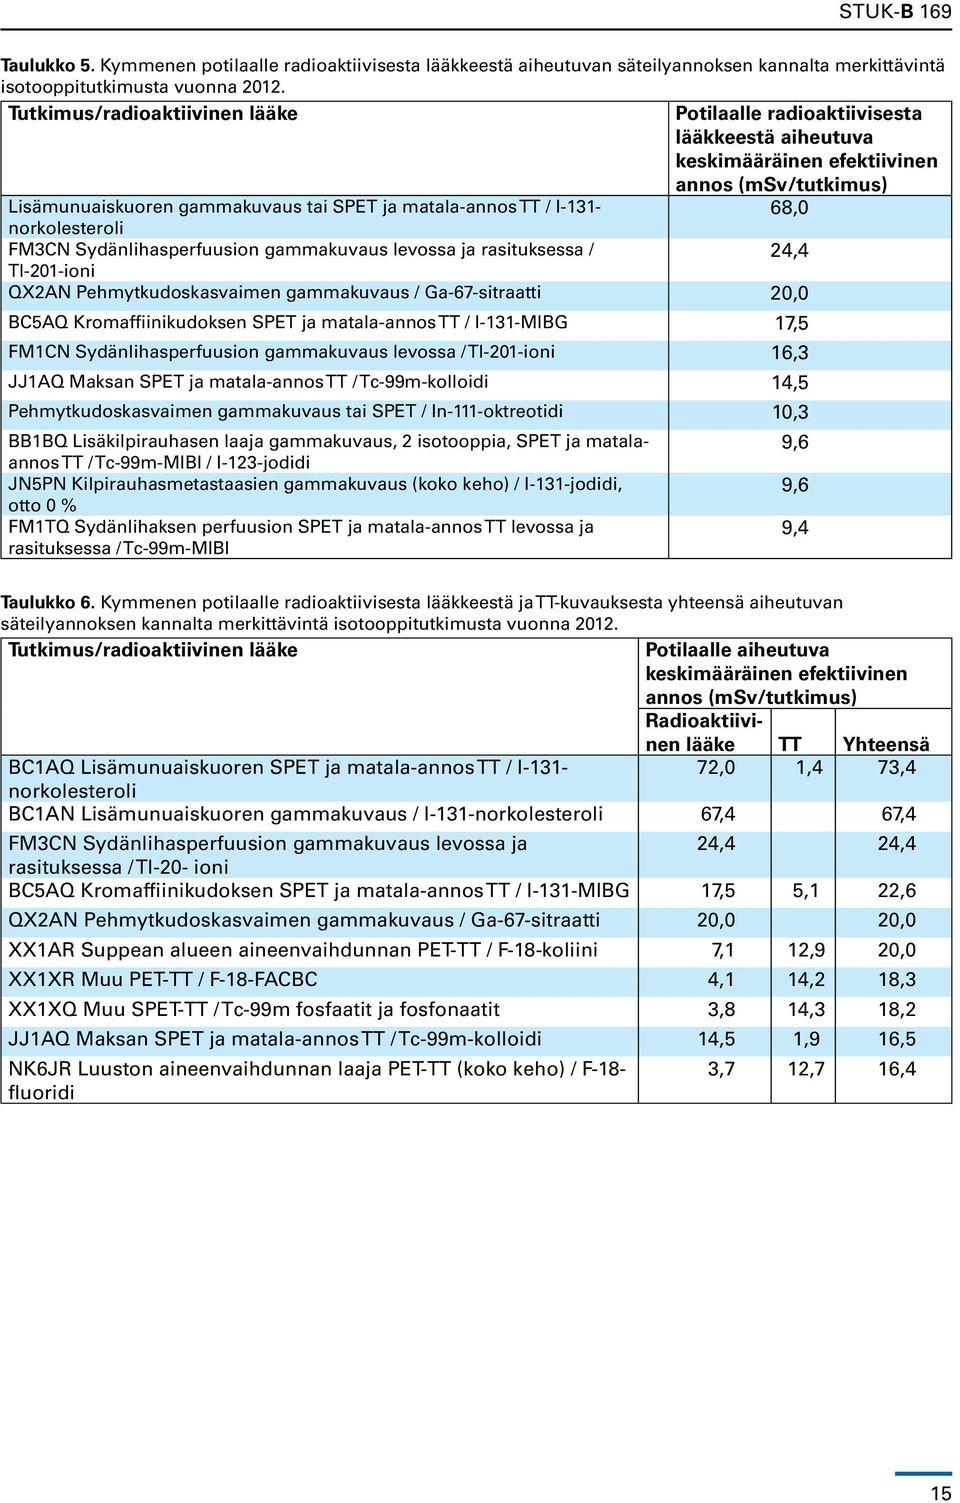 I-131-68,0 norkolesteroli FM3CN Sydänlihasperfuusion gammakuvaus levossa ja rasituksessa / 24,4 Tl-201-ioni QX2AN Pehmytkudoskasvaimen gammakuvaus / Ga-67-sitraatti 20,0 BC5AQ Kromaffiinikudoksen